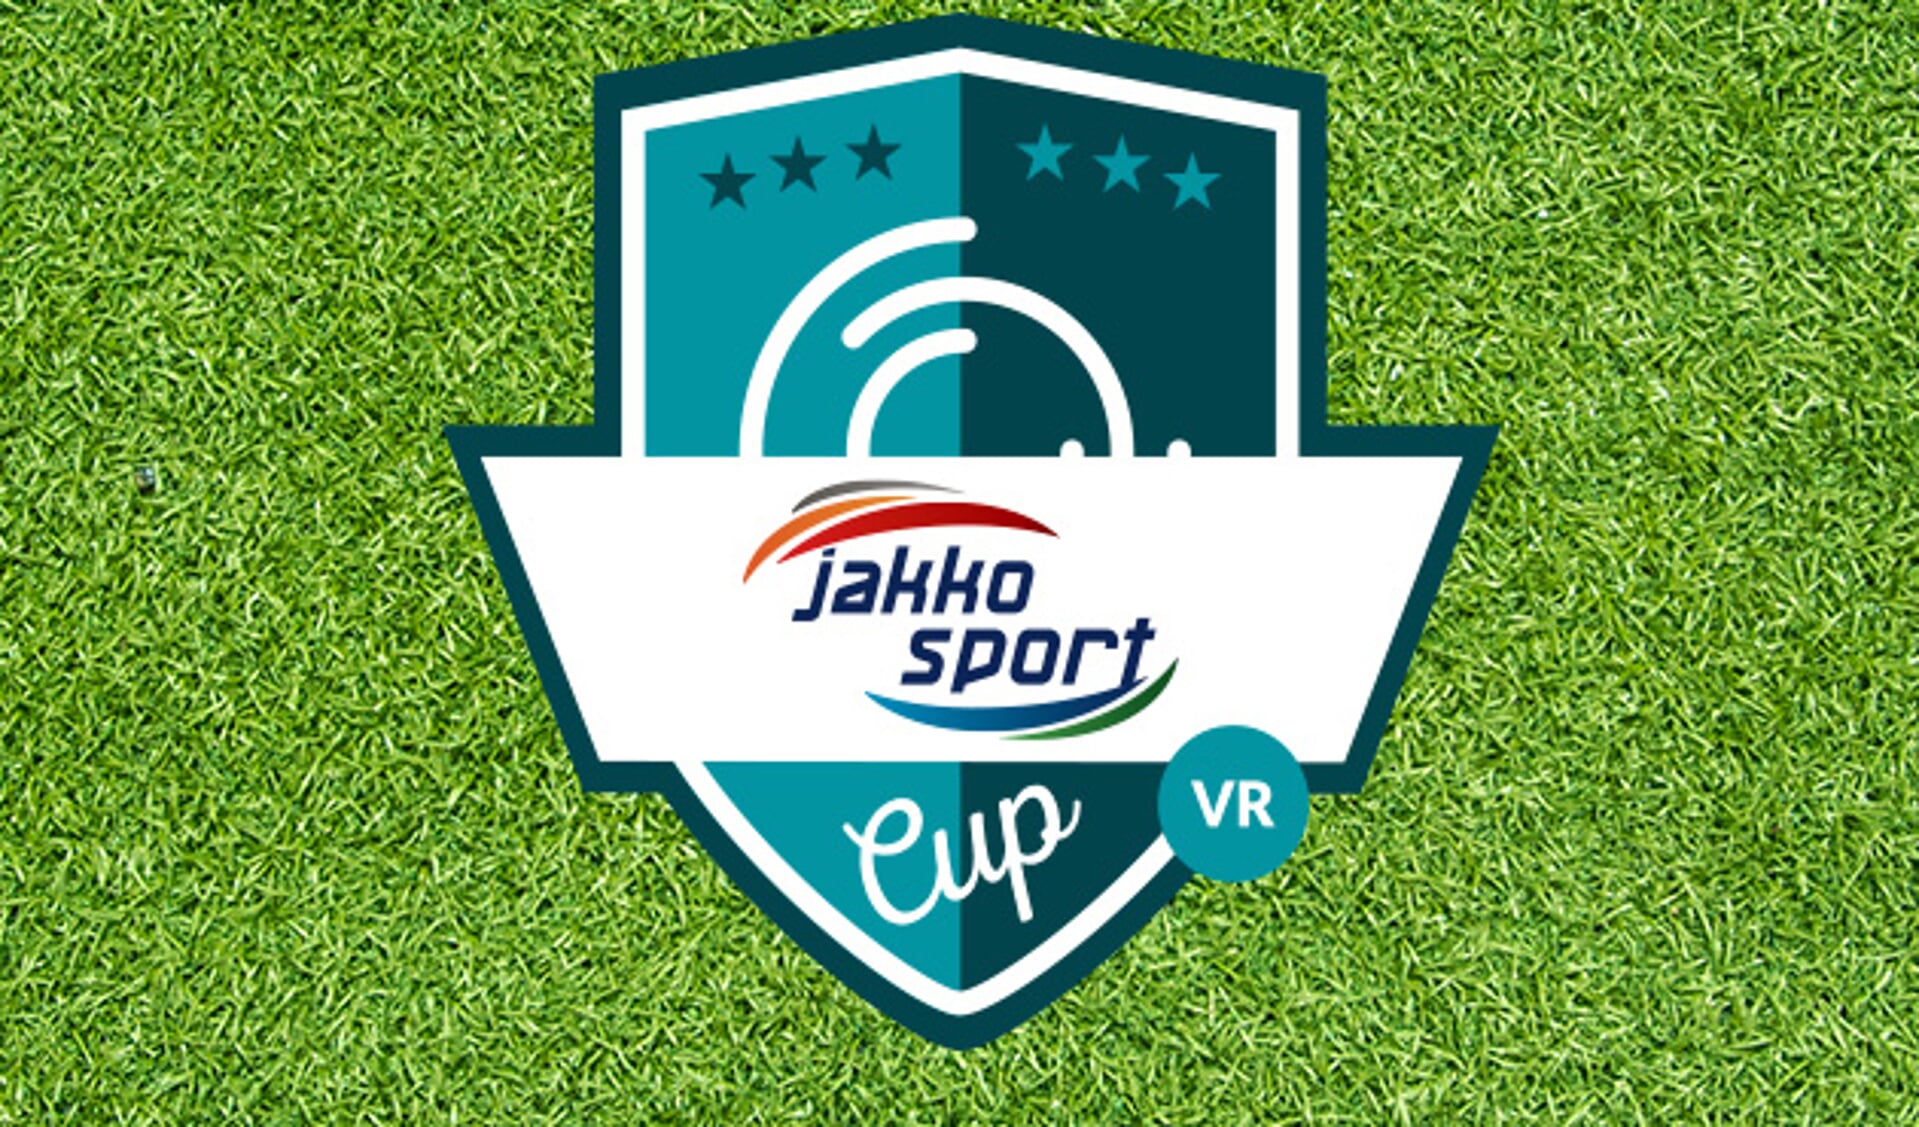 SteDoCo eerste finalist in Jakko Sport Cup VR